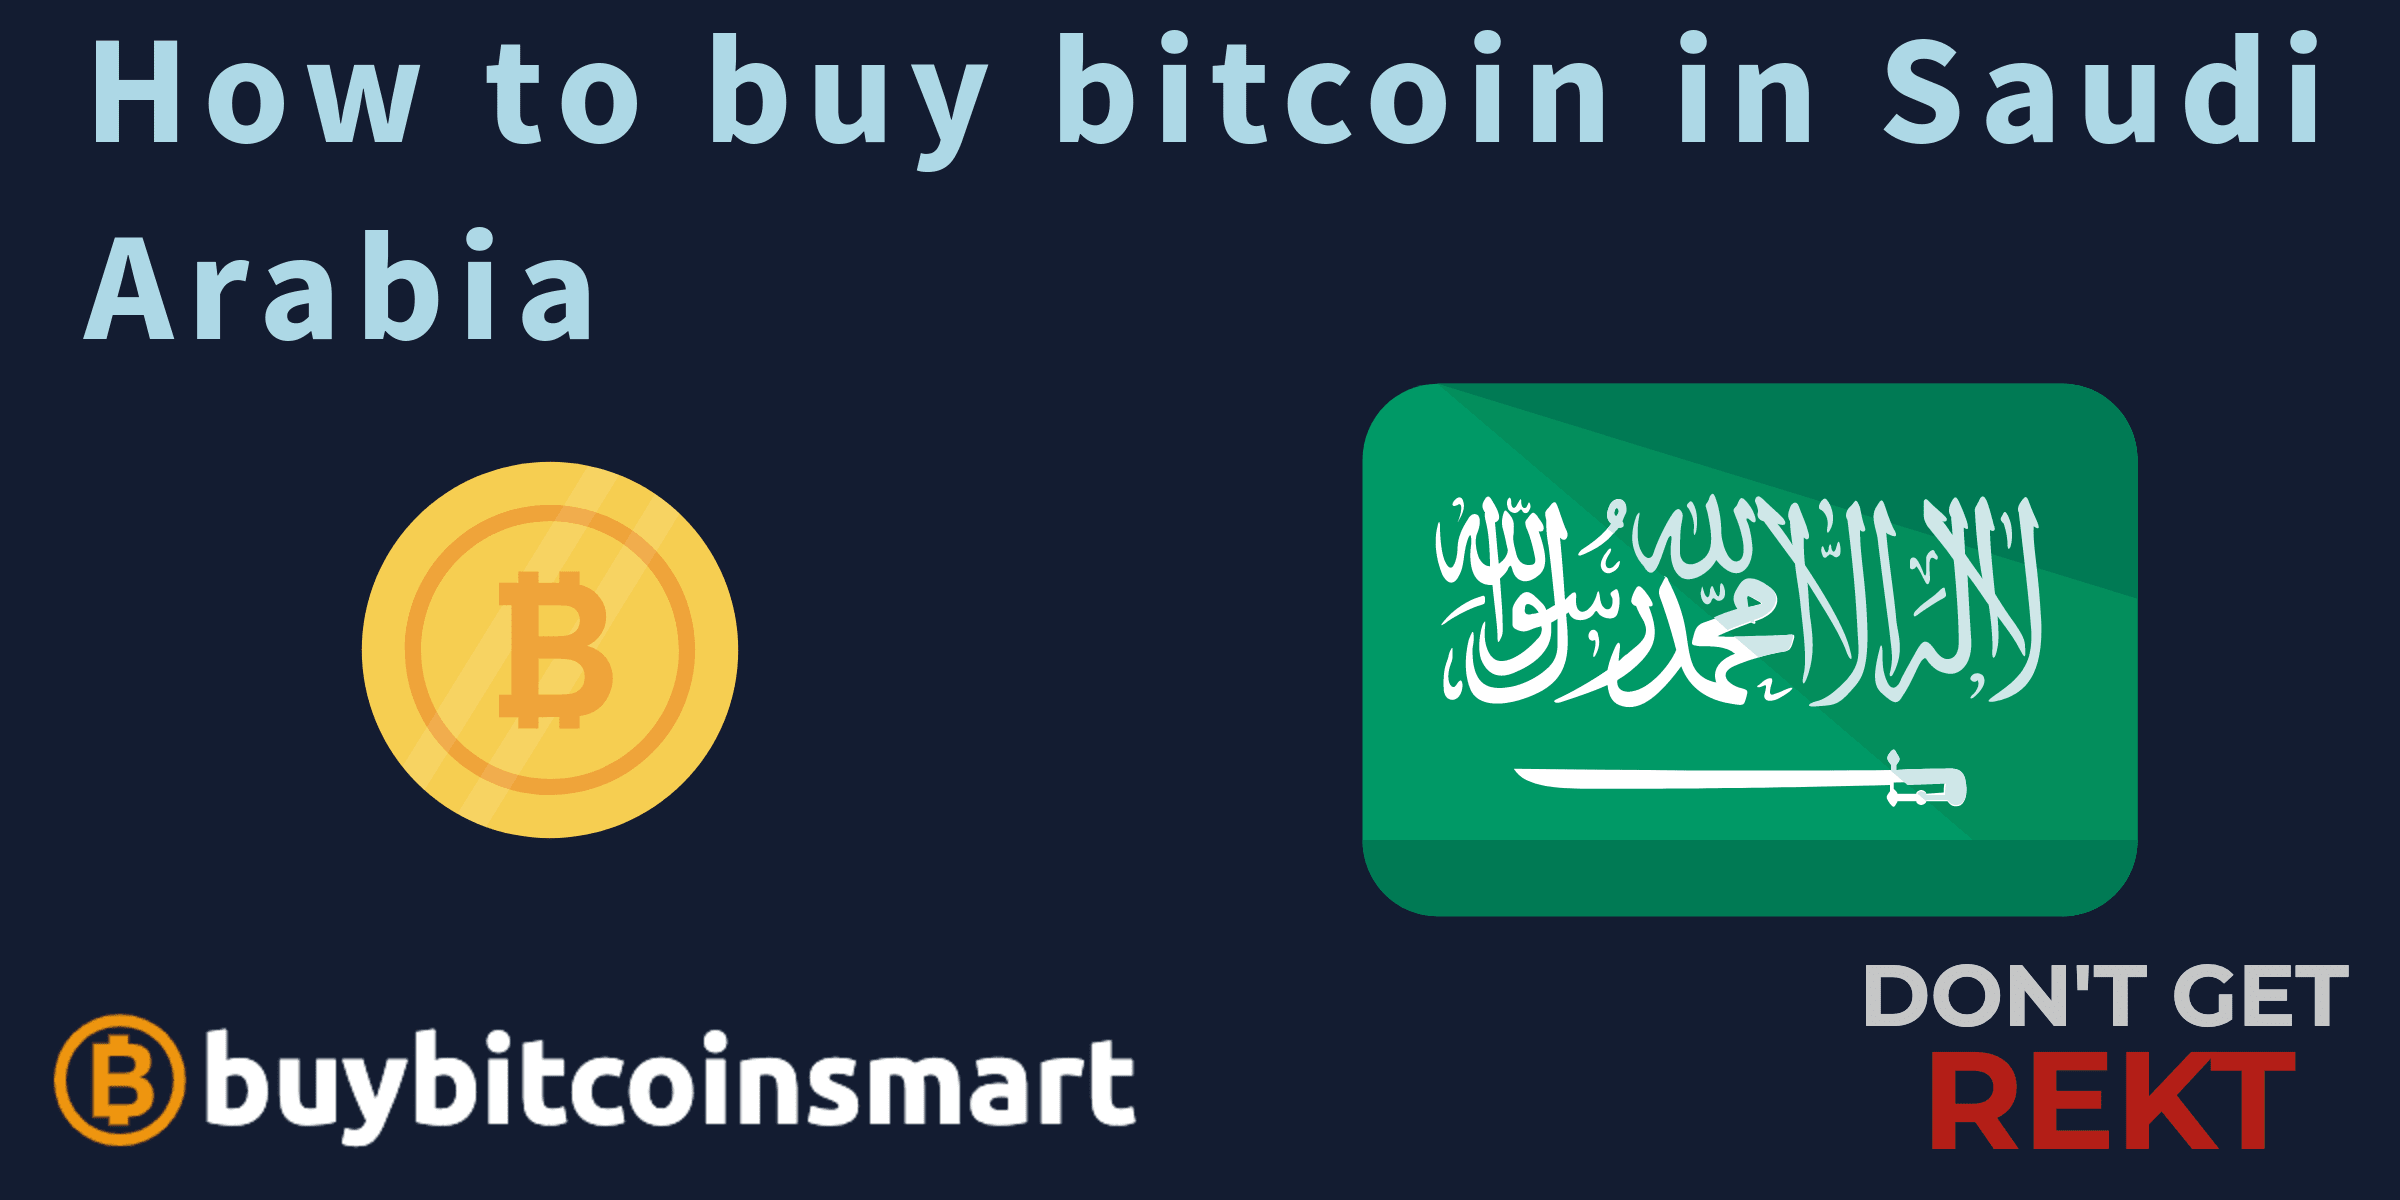 How to buy bitcoin in Saudi Arabia in 3 easy steps